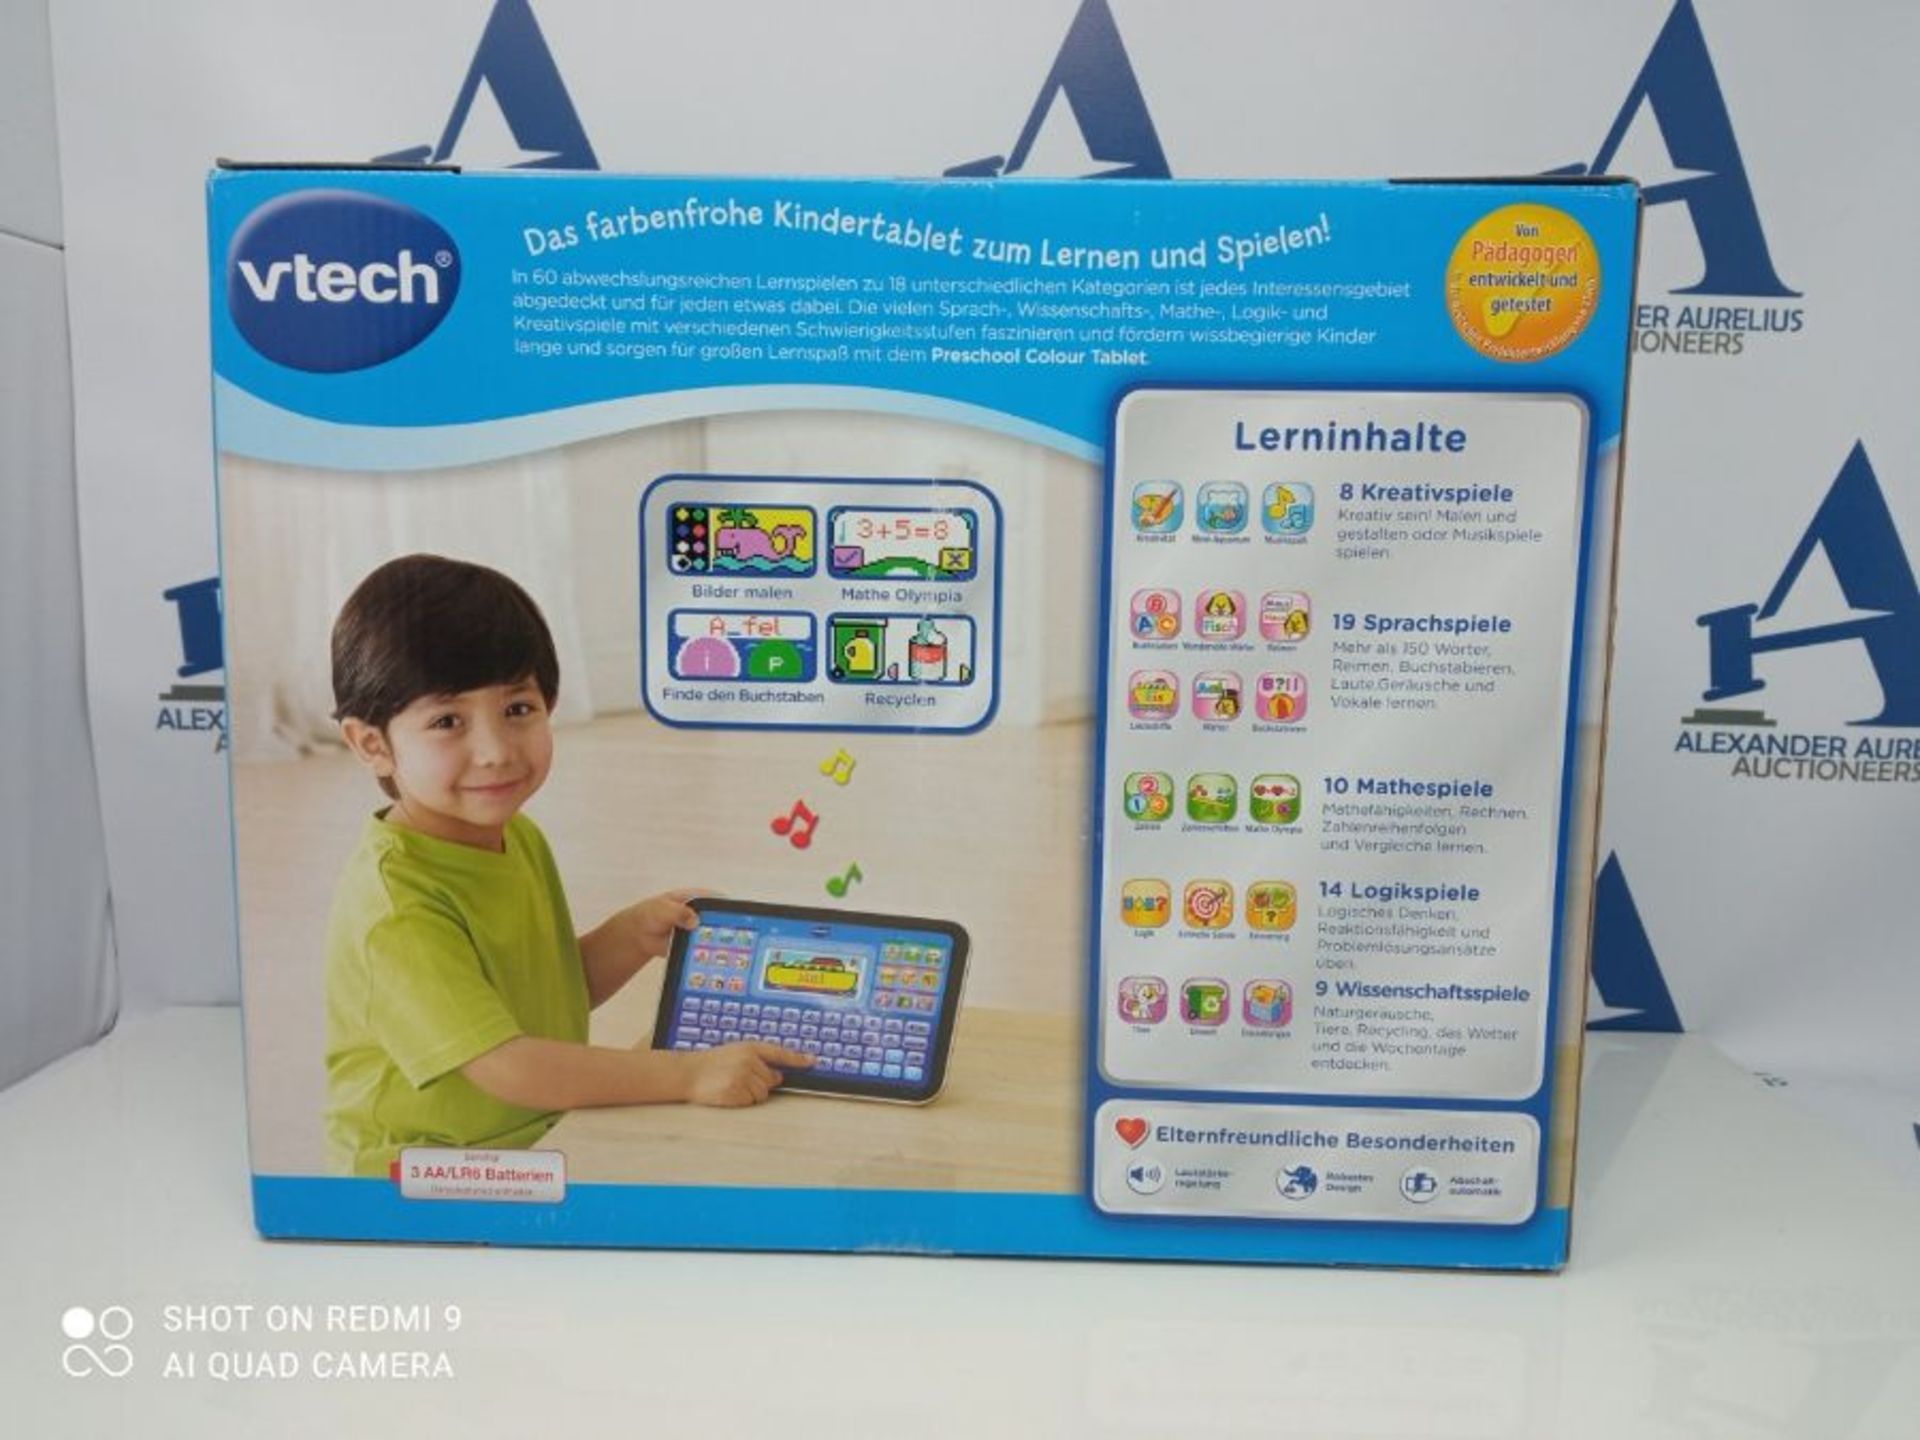 VTech Preschool Color Tablet Blue, German Version - Image 3 of 3